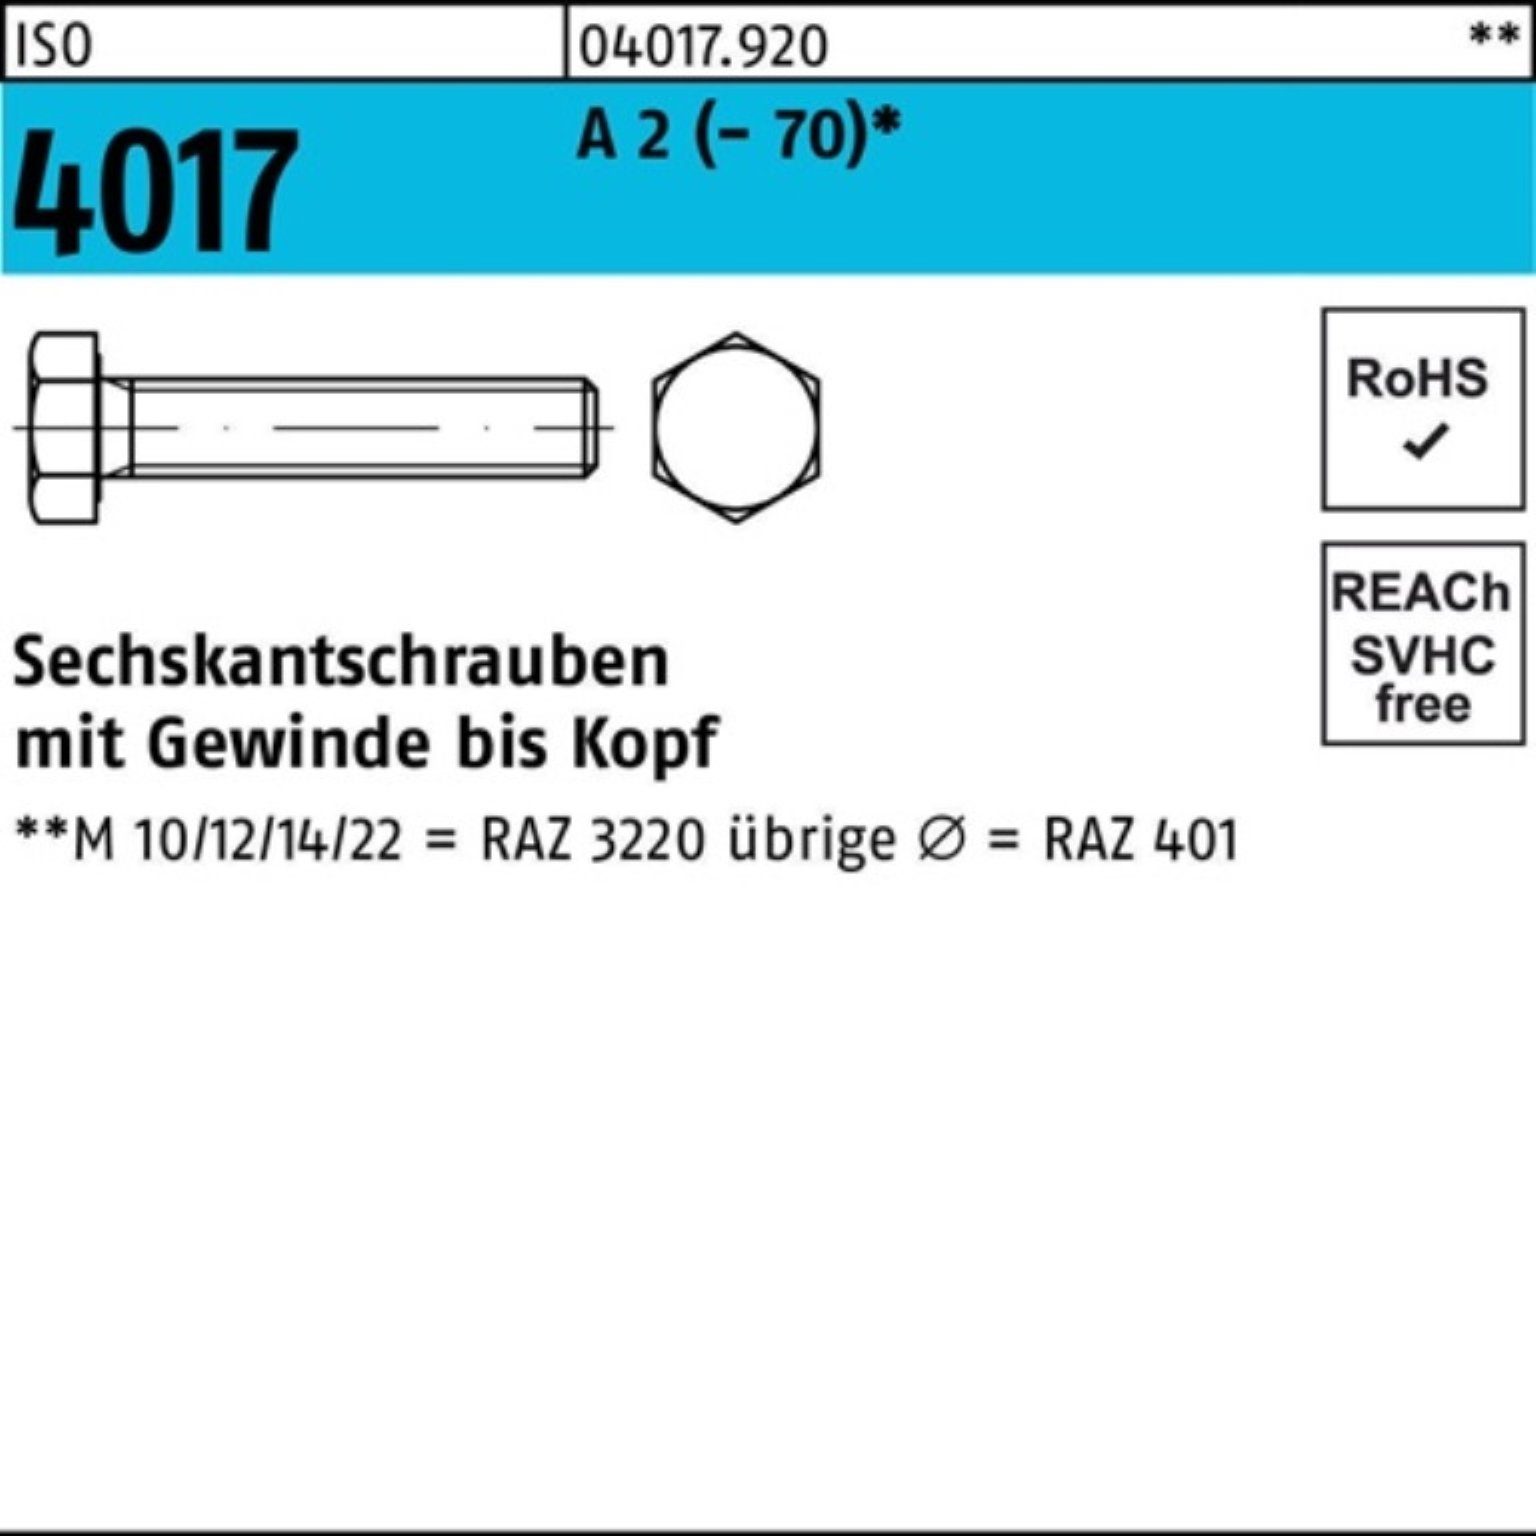 Bufab Sechskantschraube 200er Pack Sechskantschraube ISO 4017 VG M6x 30 A 2 (70) 200 Stück | Schrauben